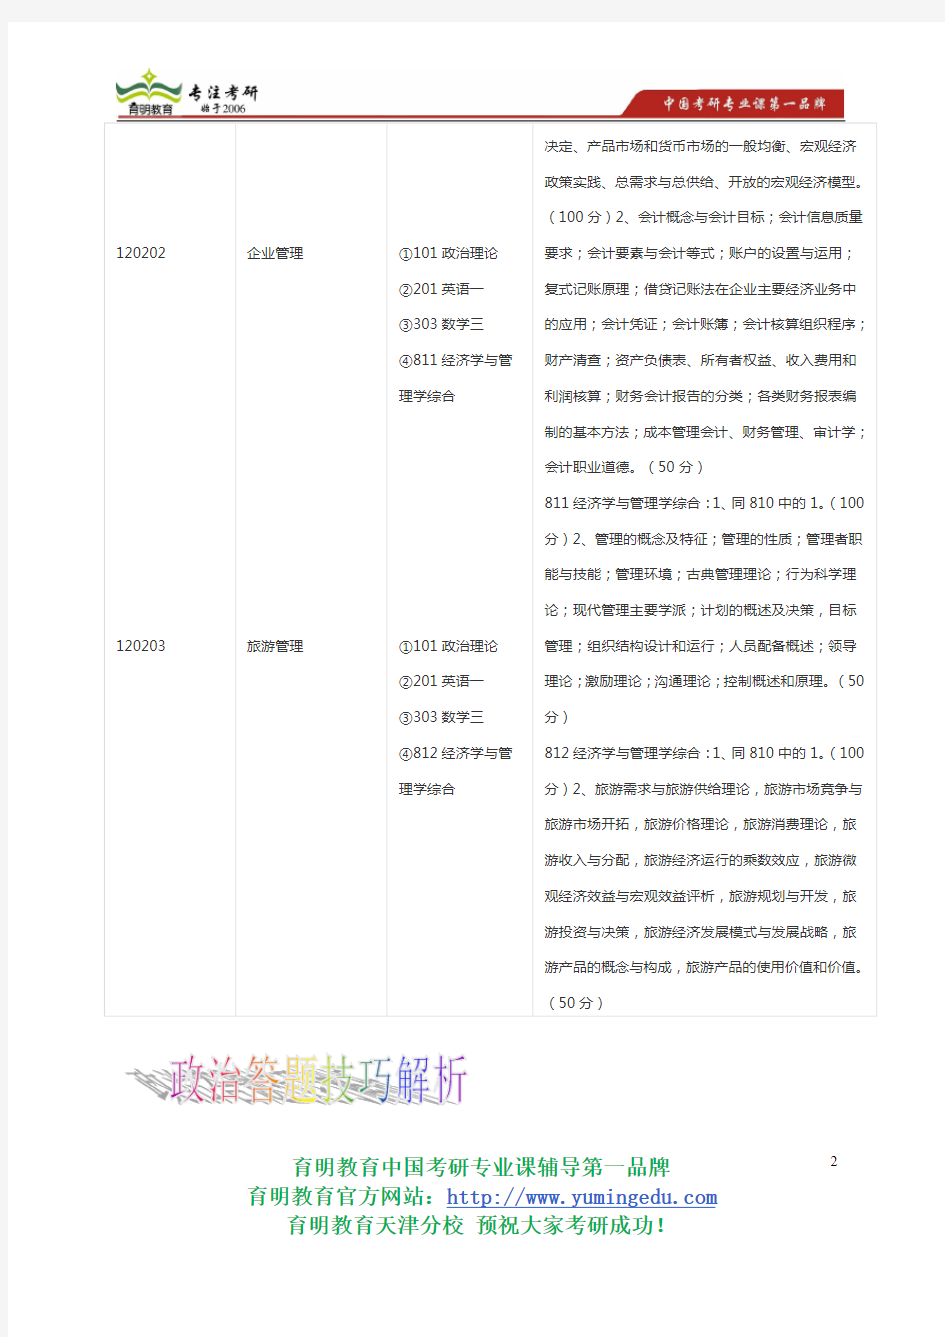 2014年天津财经大学企业管理专业考研参考书专业课考研真题考录比复试线